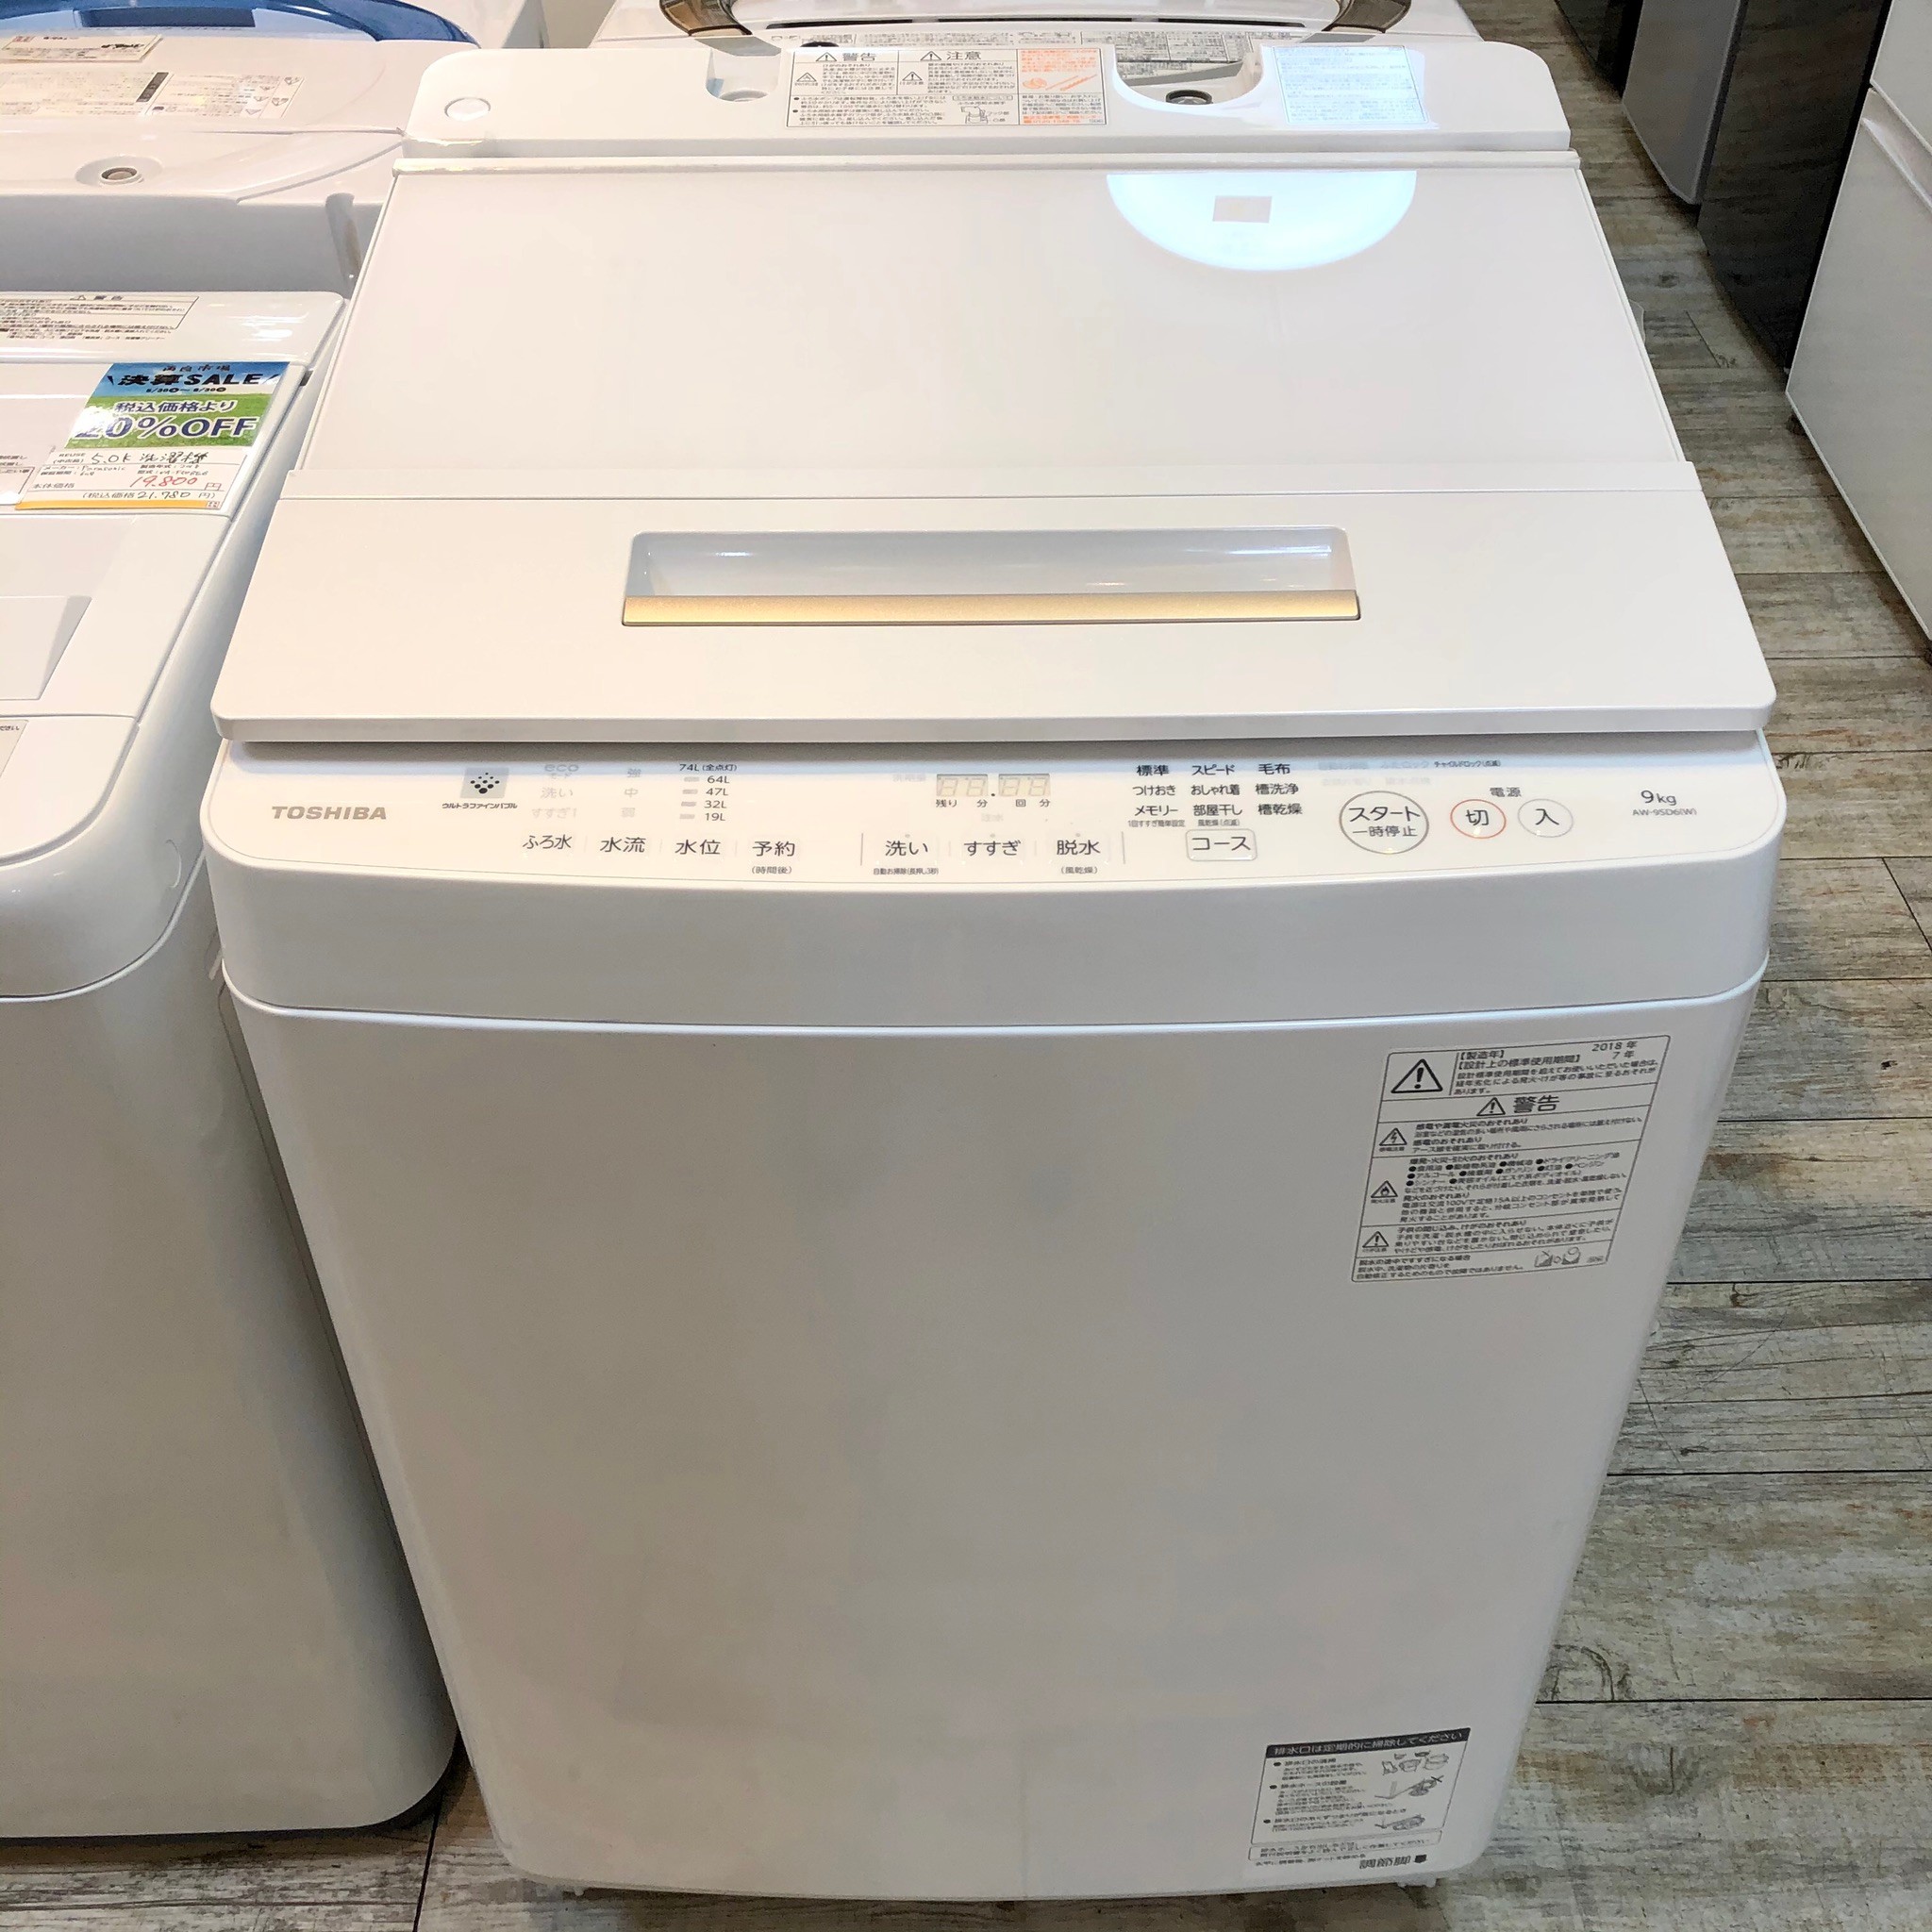 東芝 9キロ洗濯機 TOSHIBA AW-9SV7(W) ウルトラファインバブル - 洗濯機